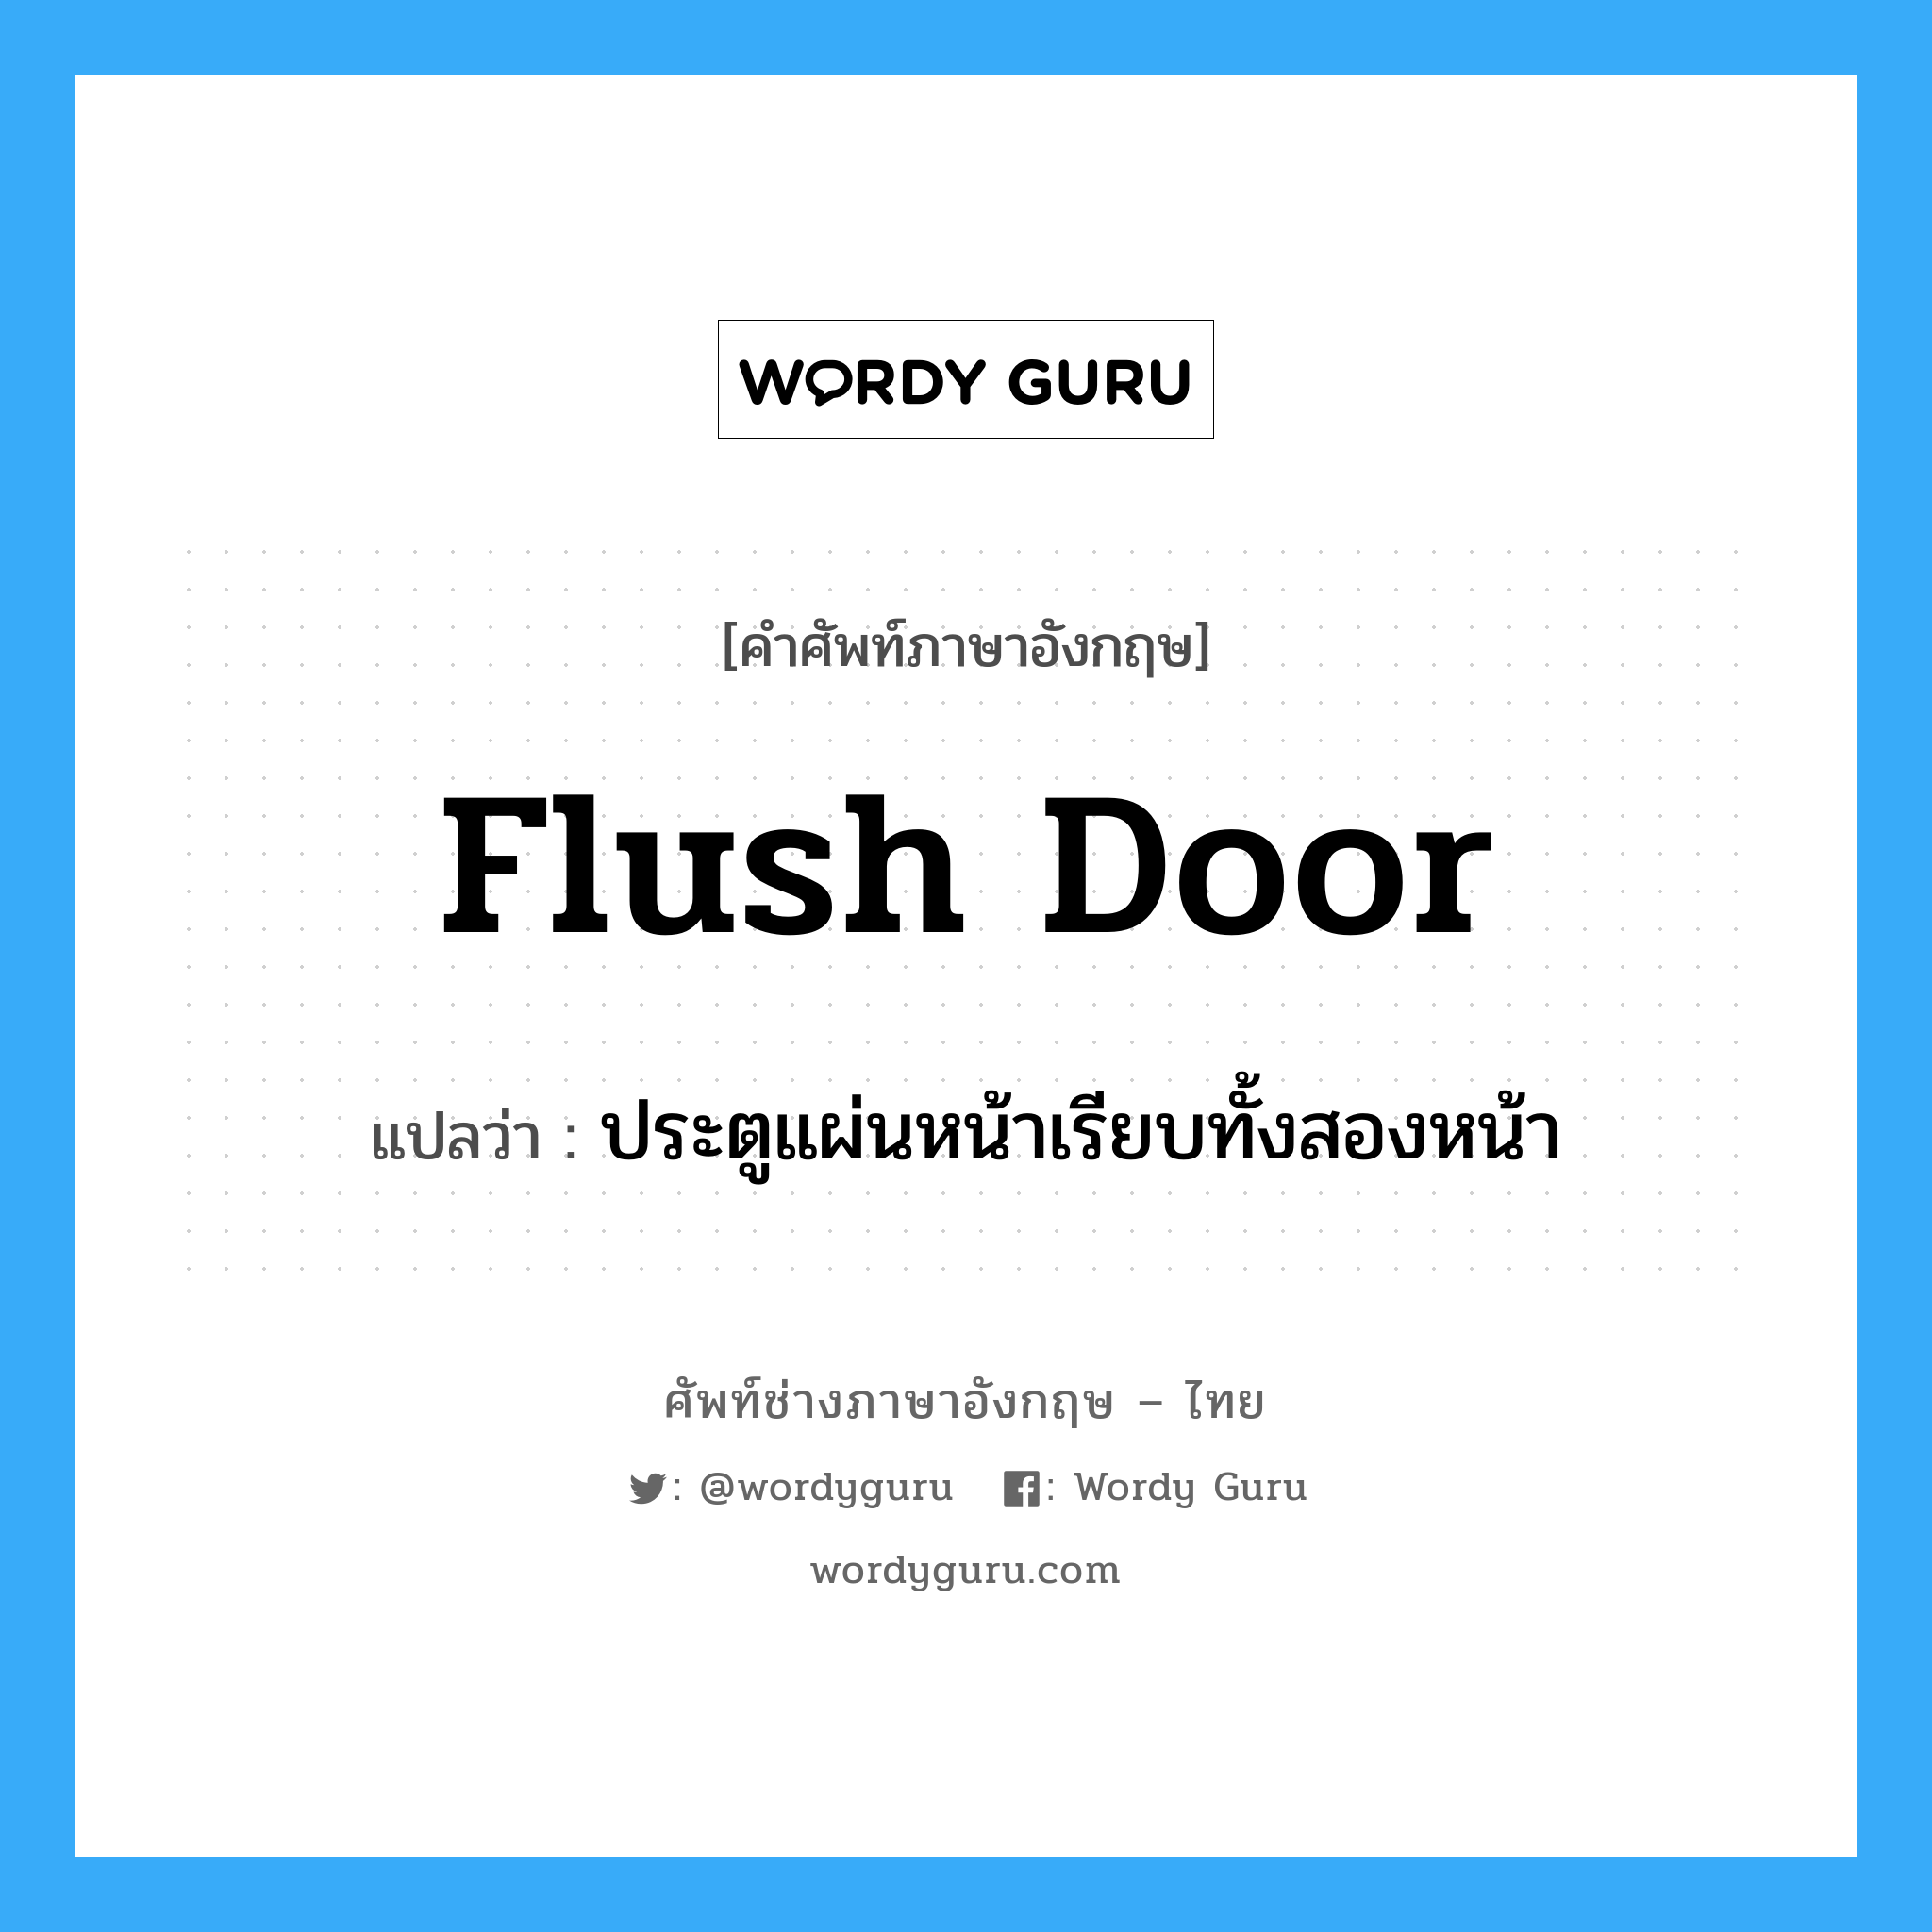 flush door แปลว่า?, คำศัพท์ช่างภาษาอังกฤษ - ไทย flush door คำศัพท์ภาษาอังกฤษ flush door แปลว่า ประตูแผ่นหน้าเรียบทั้งสองหน้า